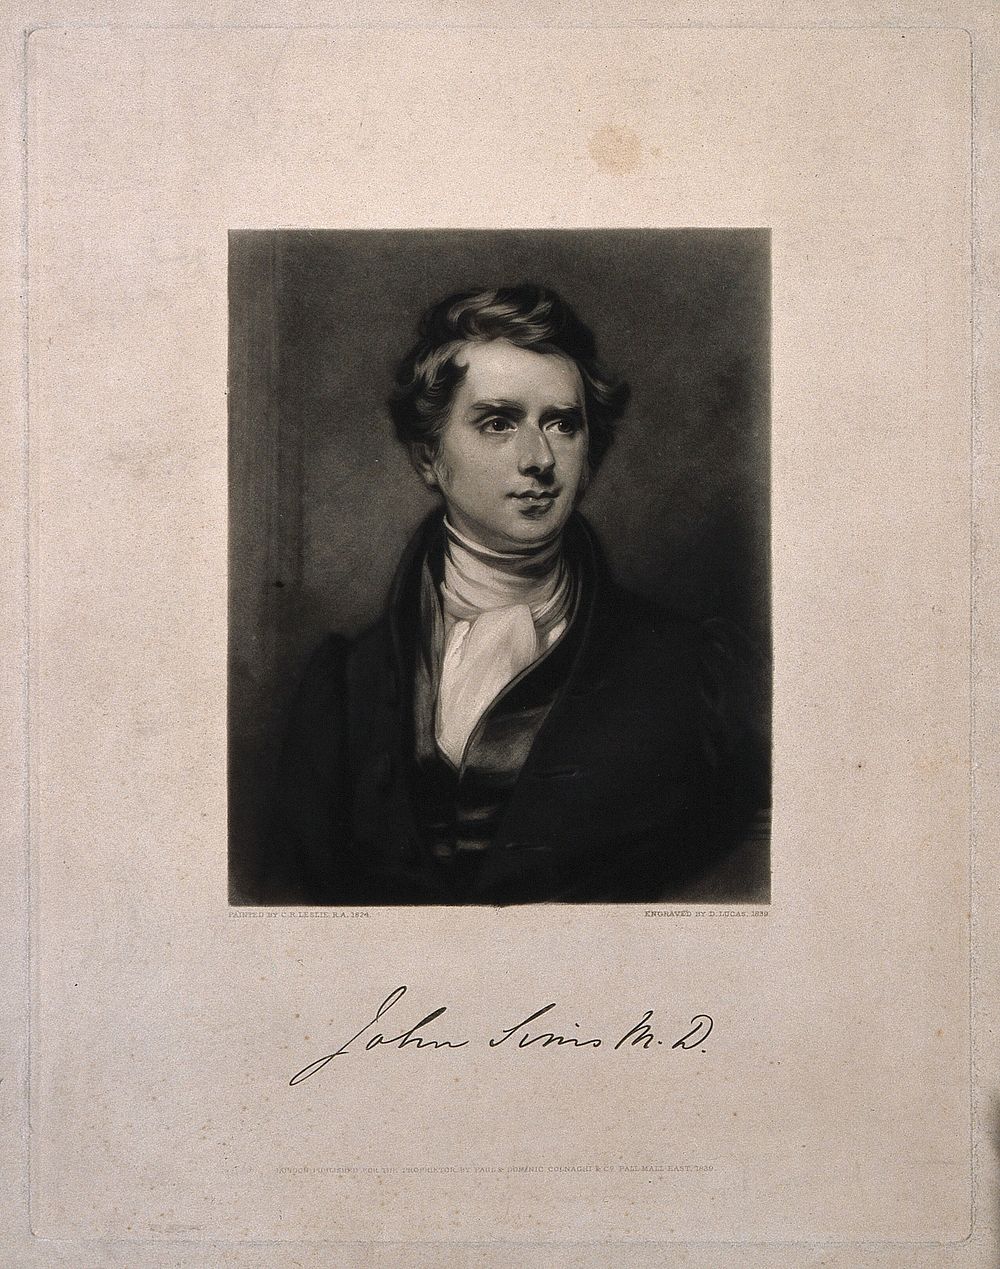 John Sims. Mezzotint by D. Lucas, 1839, after C. R. Leslie, 1824.